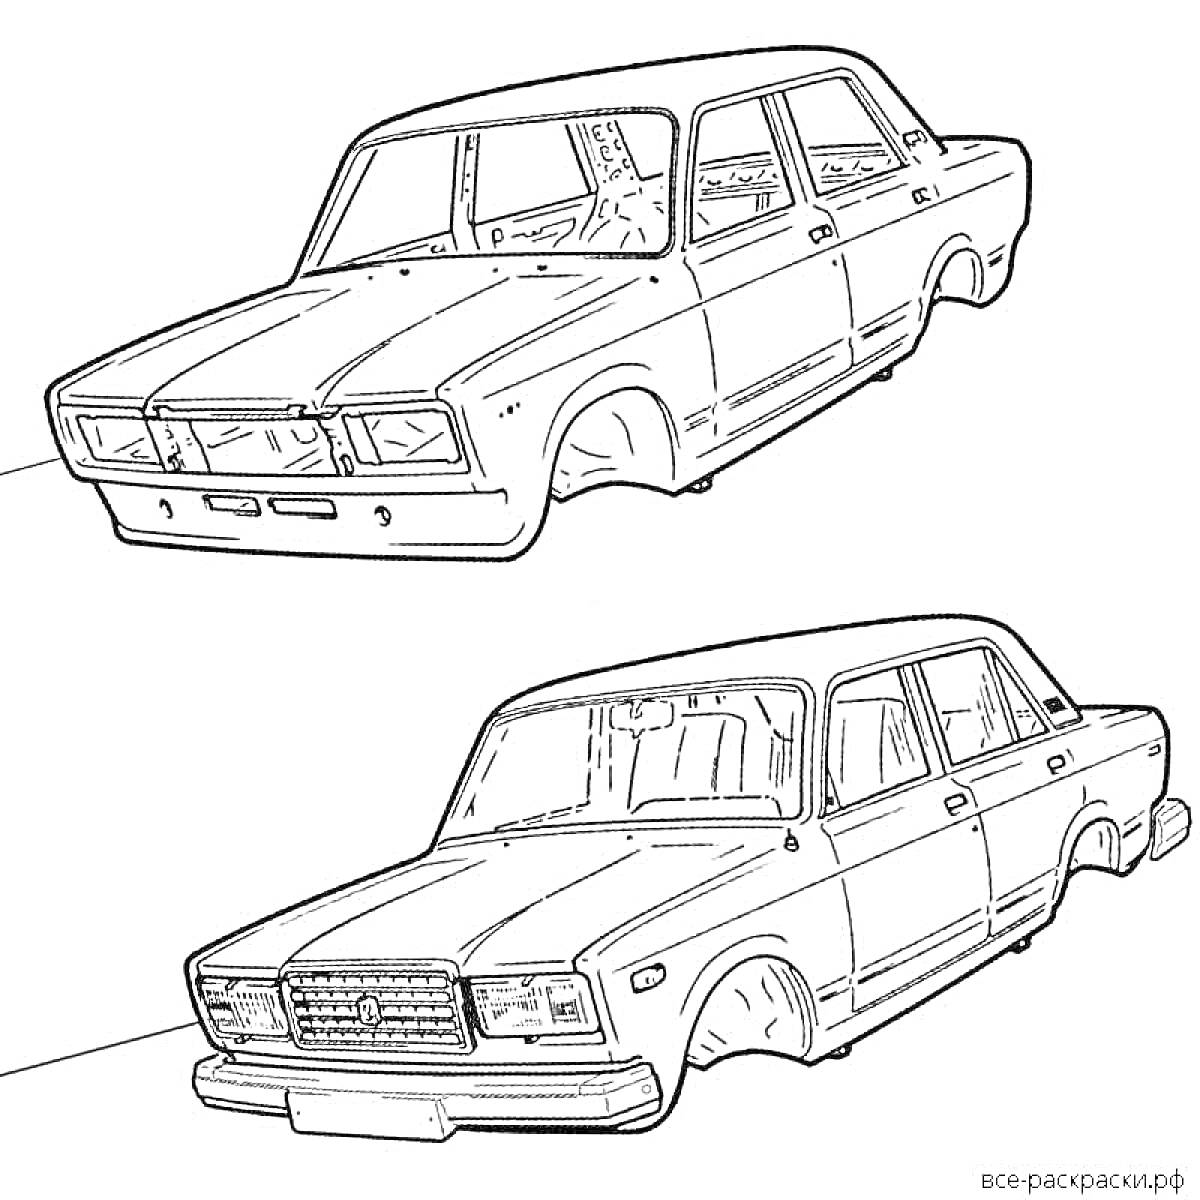 Раскраска Рисунок двух автомобилей ВАЗ 2107. Верхний автомобиль виден под углом спереди-сбоку, нижний автомобиль виден под углом спереди-сбоку с другого ракурса.